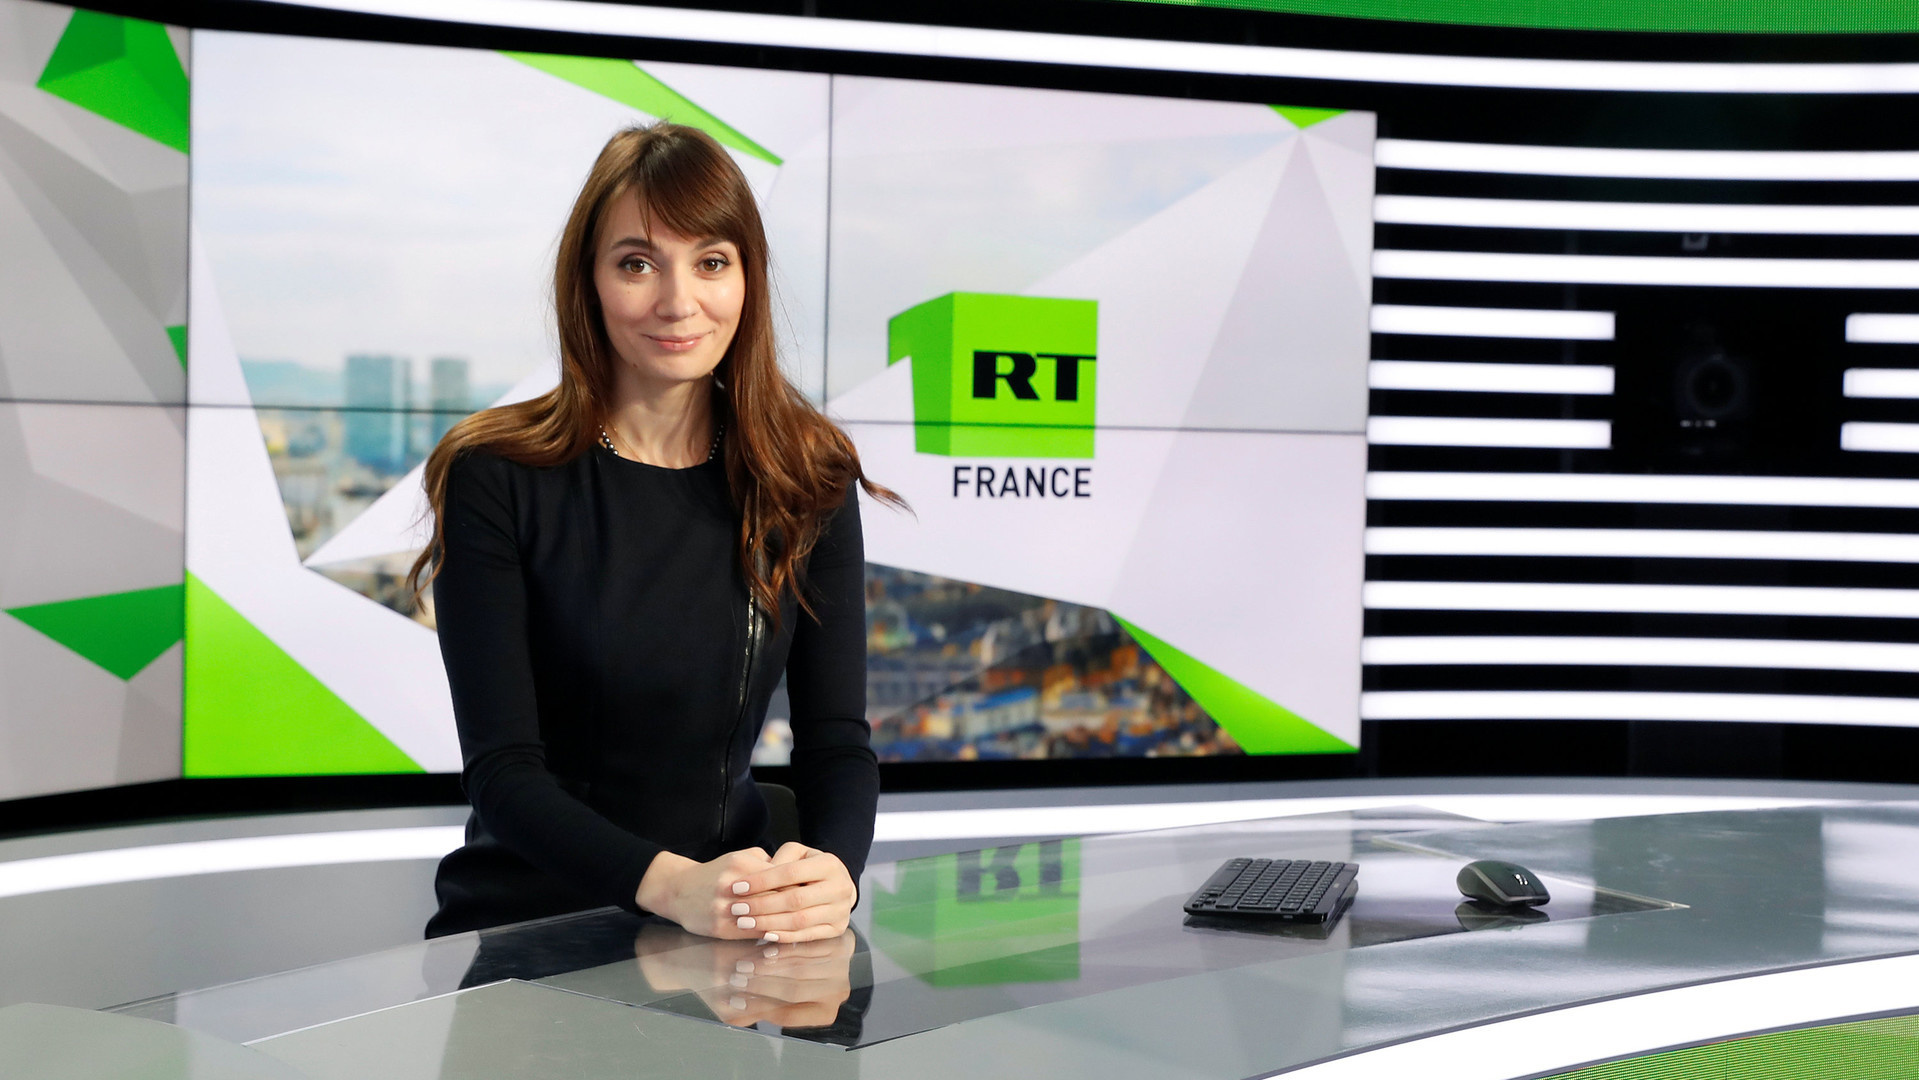 Спецслужбы Франции вплотную взялись за кремлевских пропагандистов, под угрозой телеканал RT